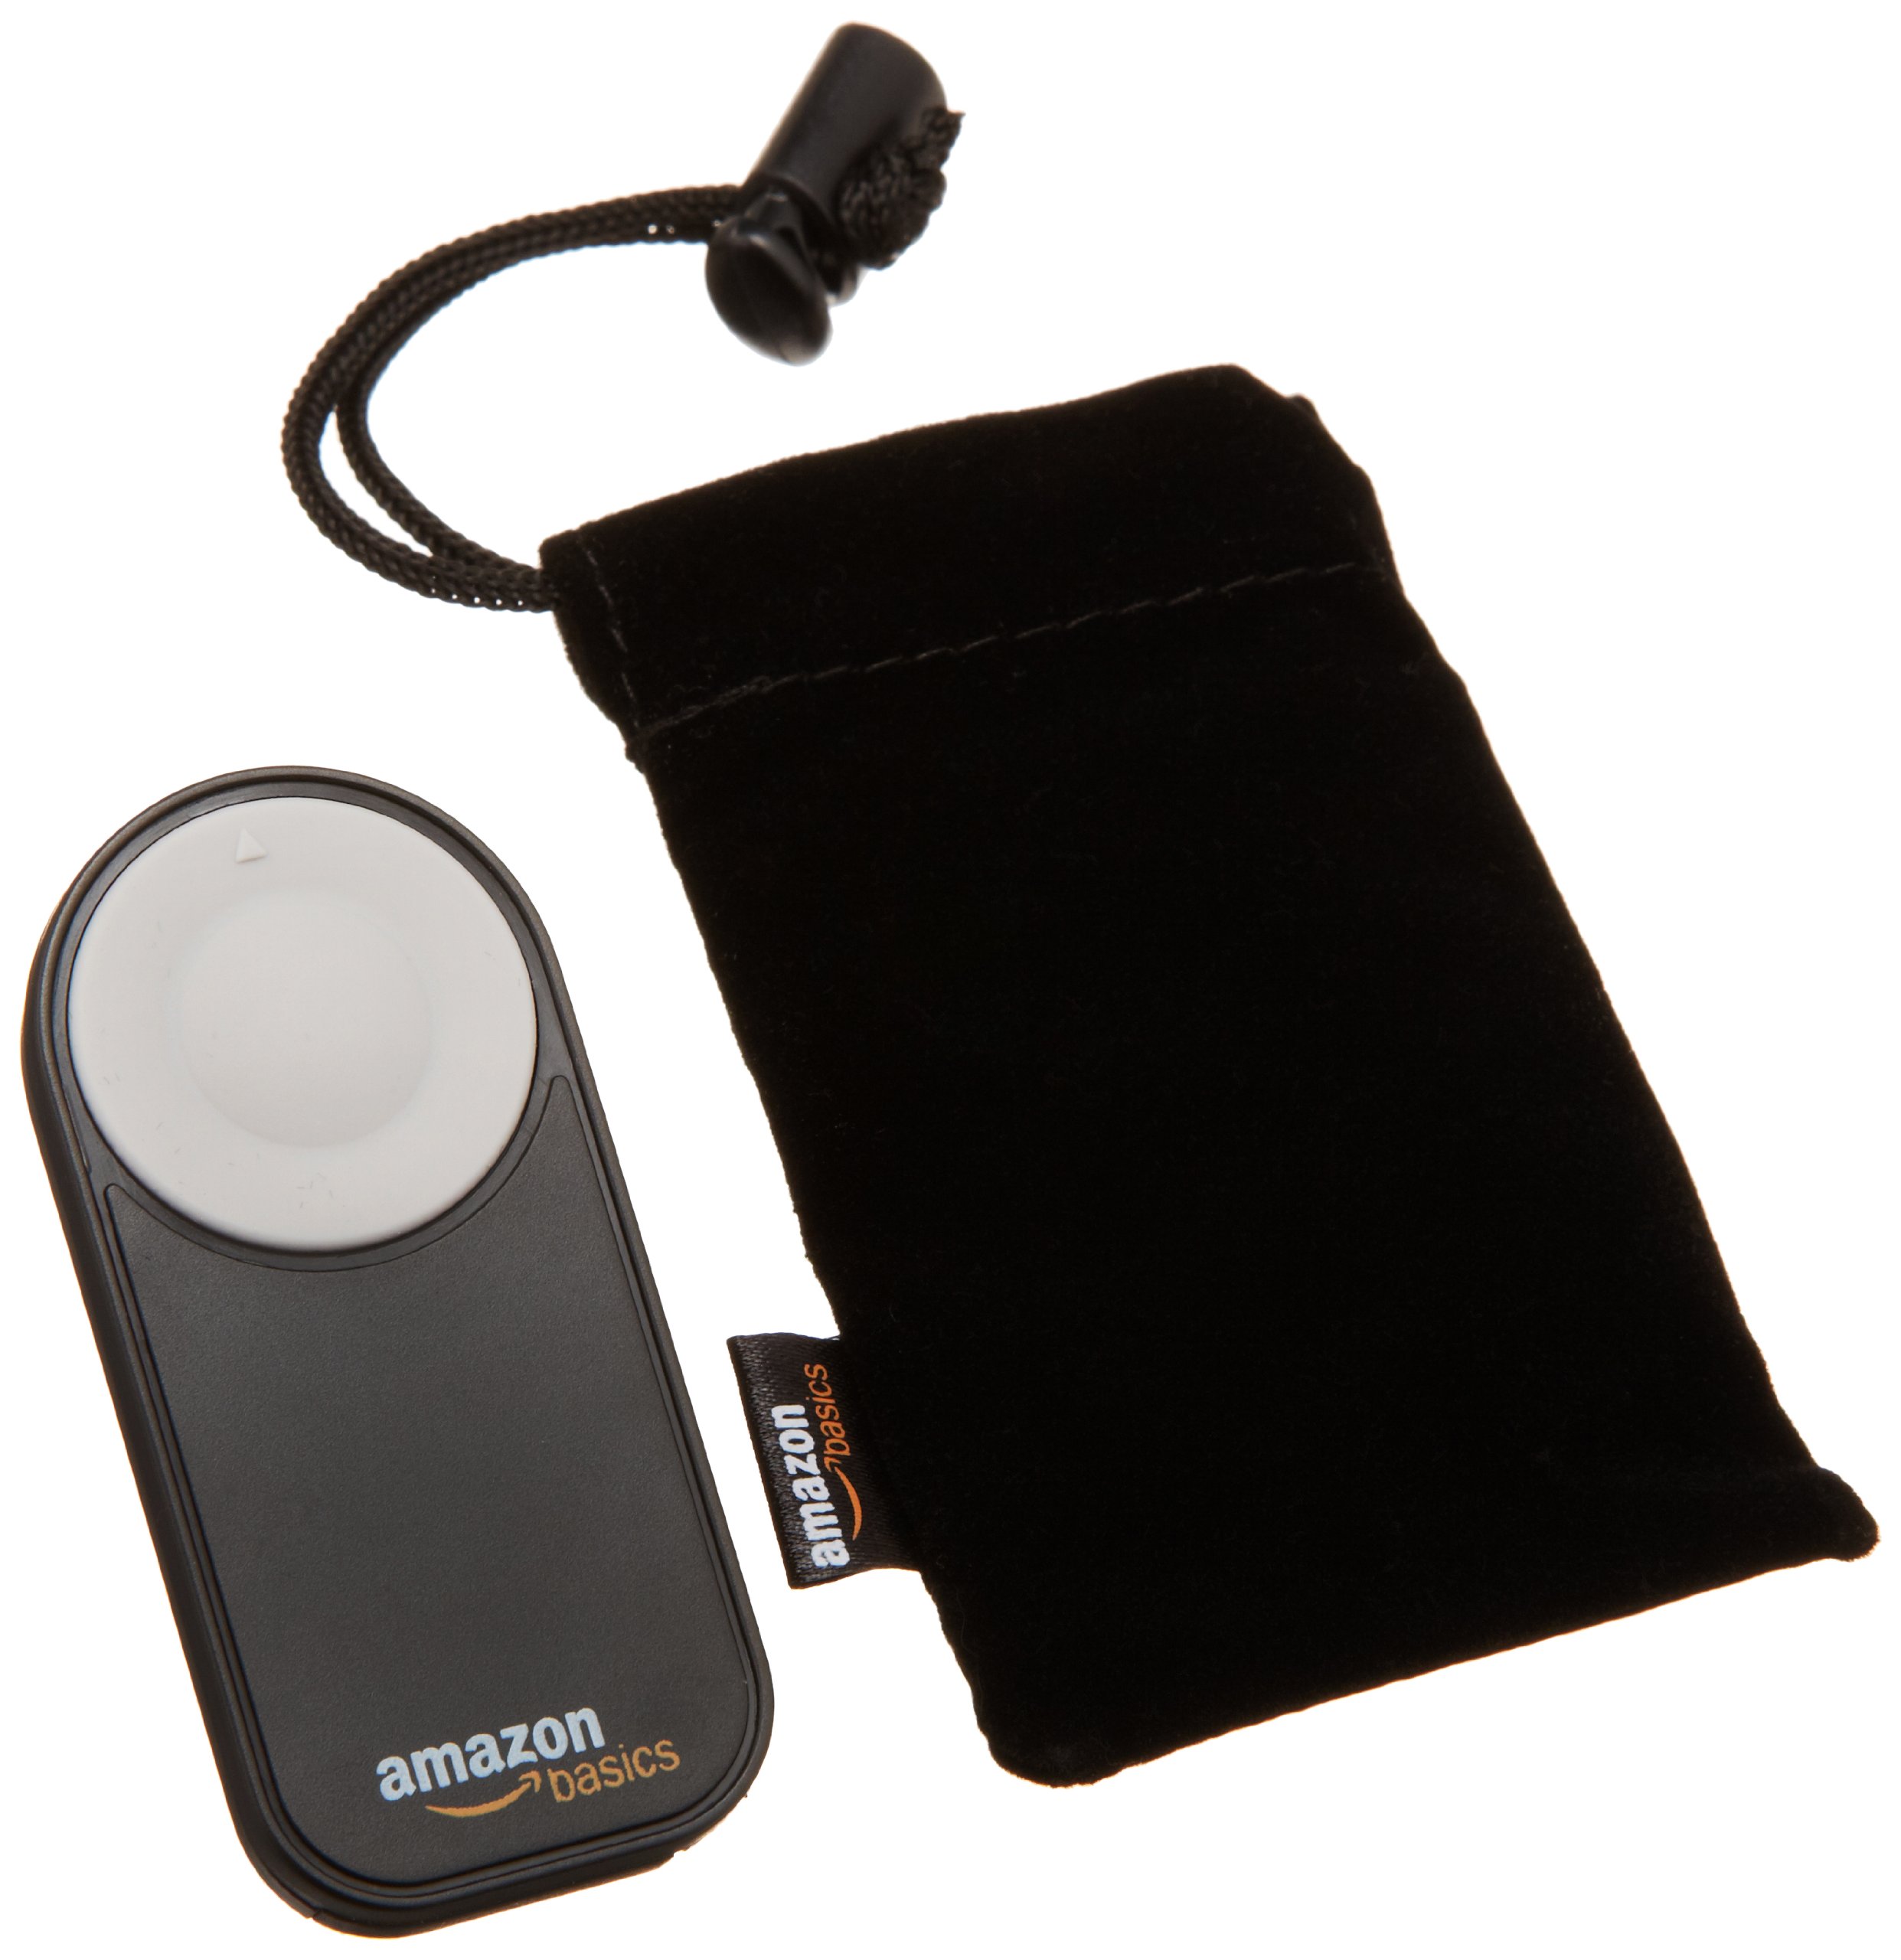 Amazon Basics Wireless Remote Control for Specific Canon Digital SLR Cameras, Black, 0.28